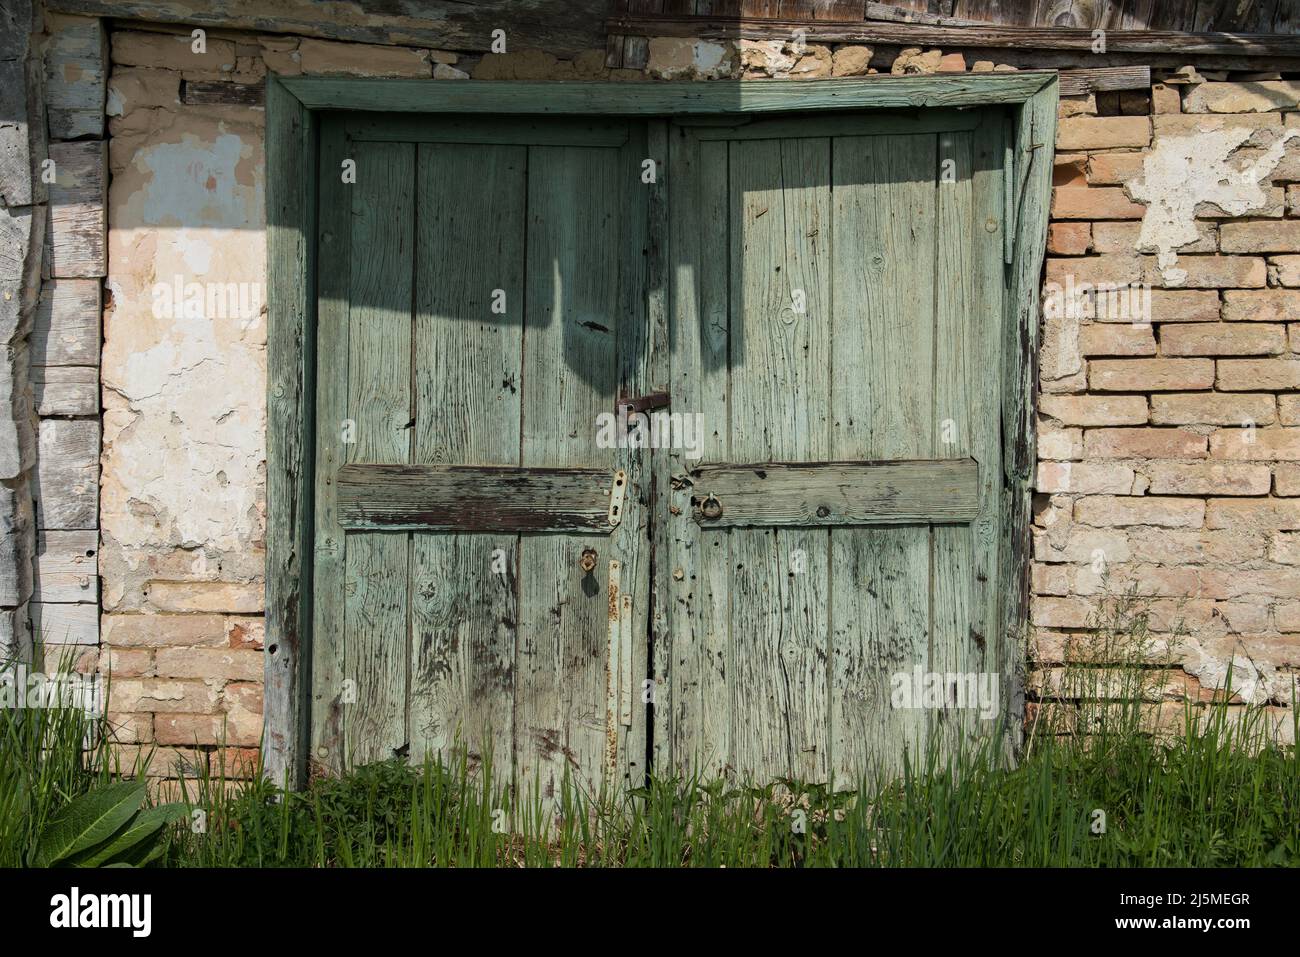 Croazia, aprile 20,2022: Vecchie porte rustiche in legno sulle pareti della casa rurale. Foto Stock